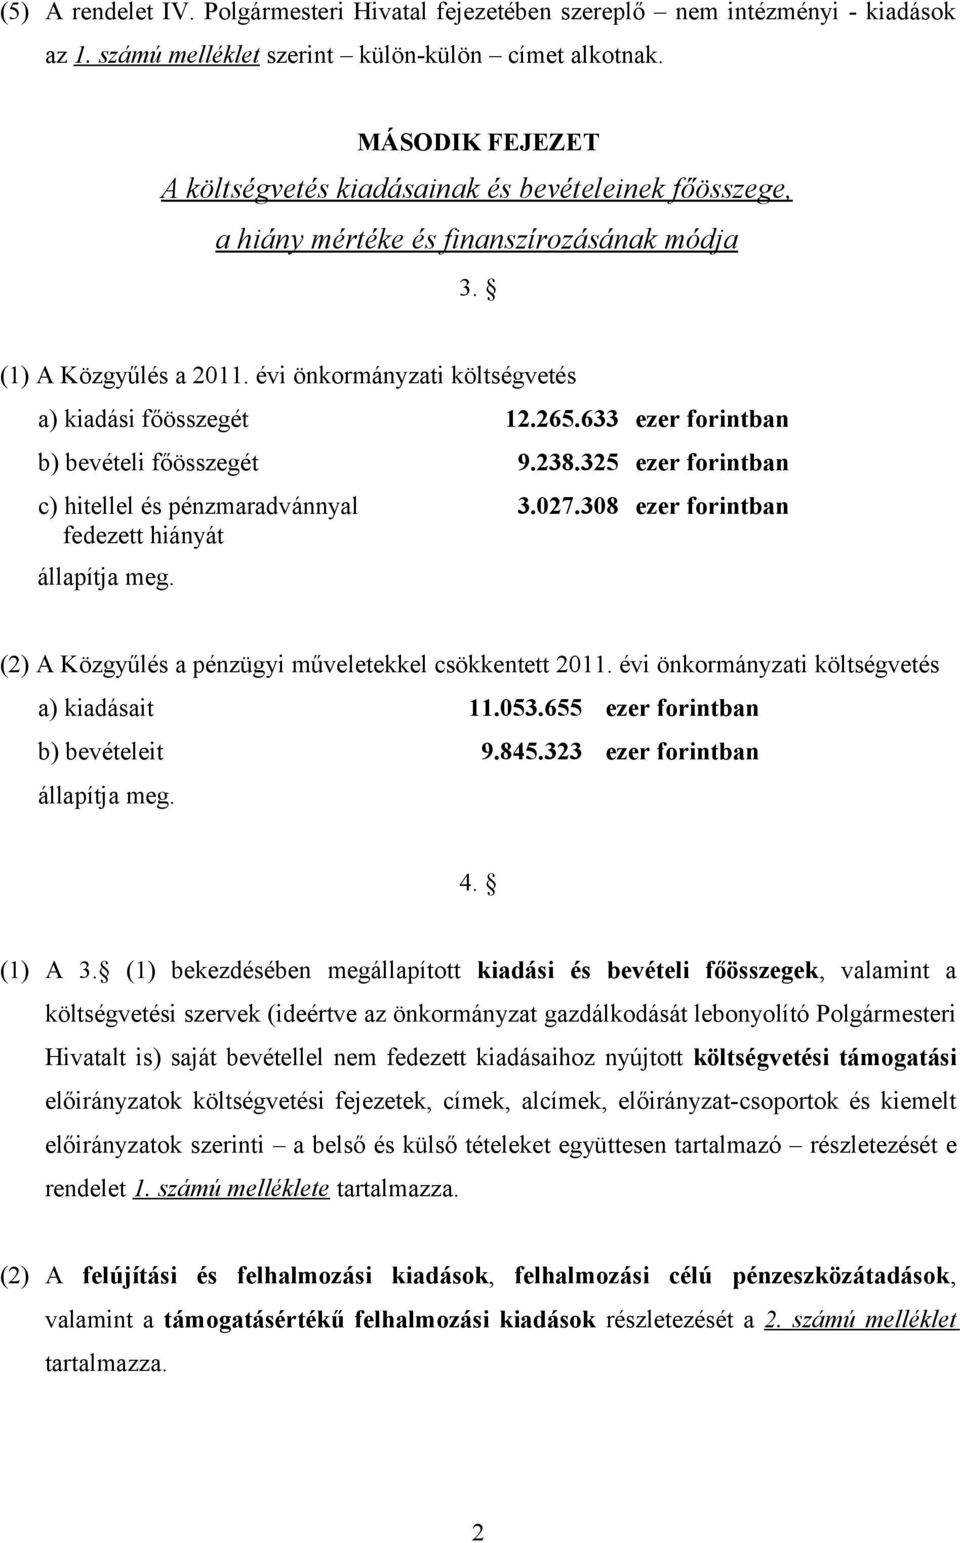 633 ezer forintban b) bevételi főösszegét 9.238.325 ezer forintban c) hitellel és pénzmaradvánnyal 3.27.38 ezer forintban fedezett hiányát állapítja meg.